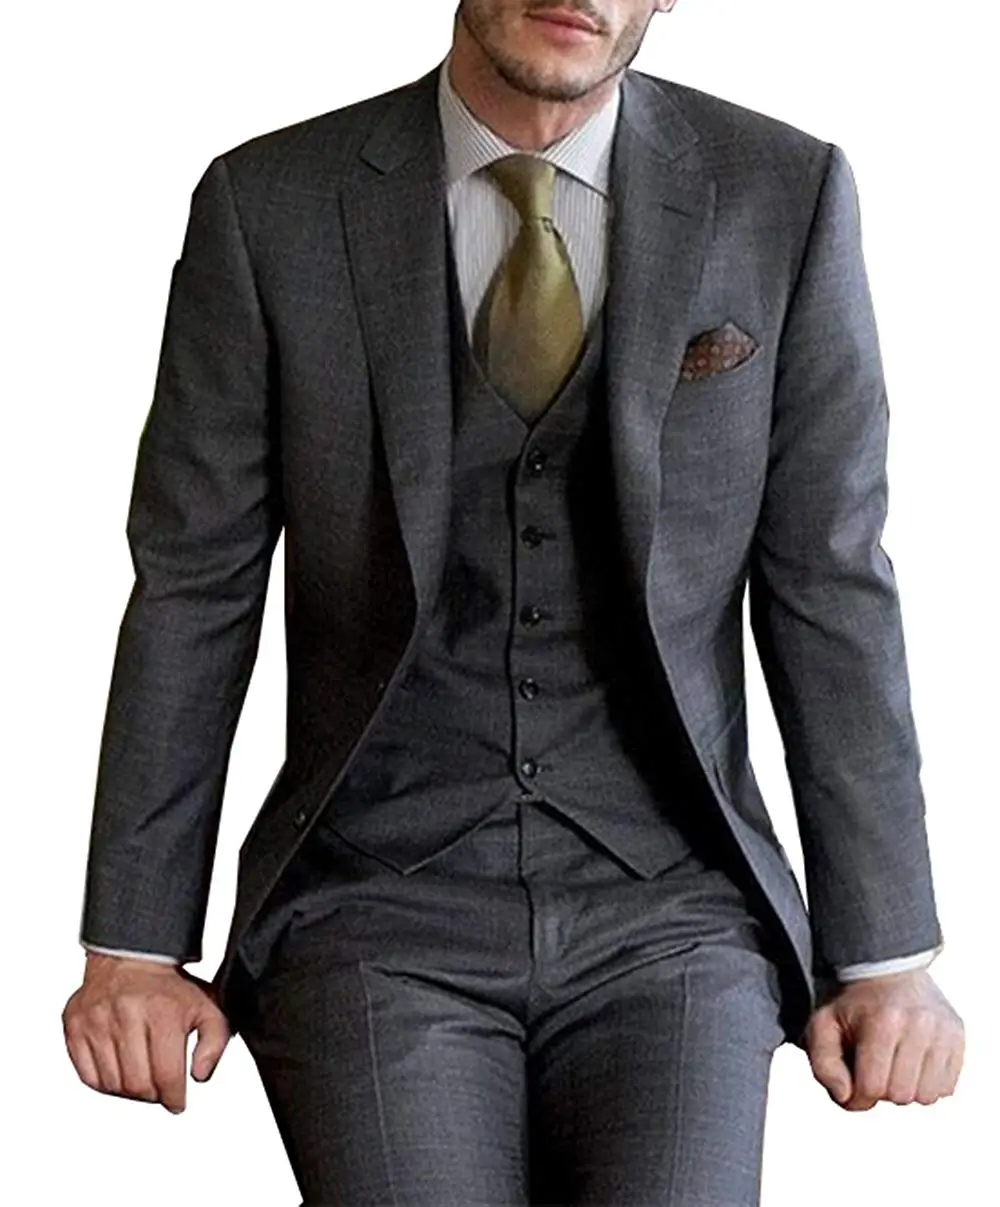 Yüksek Kaliteli Koyu Gri erkek Takım Elbise Resmi 3 Parça takım elbise Setleri Şal Yaka İki Düğme Blazer Pantolon (ceket + pantolon + yelek) Görüntü 2